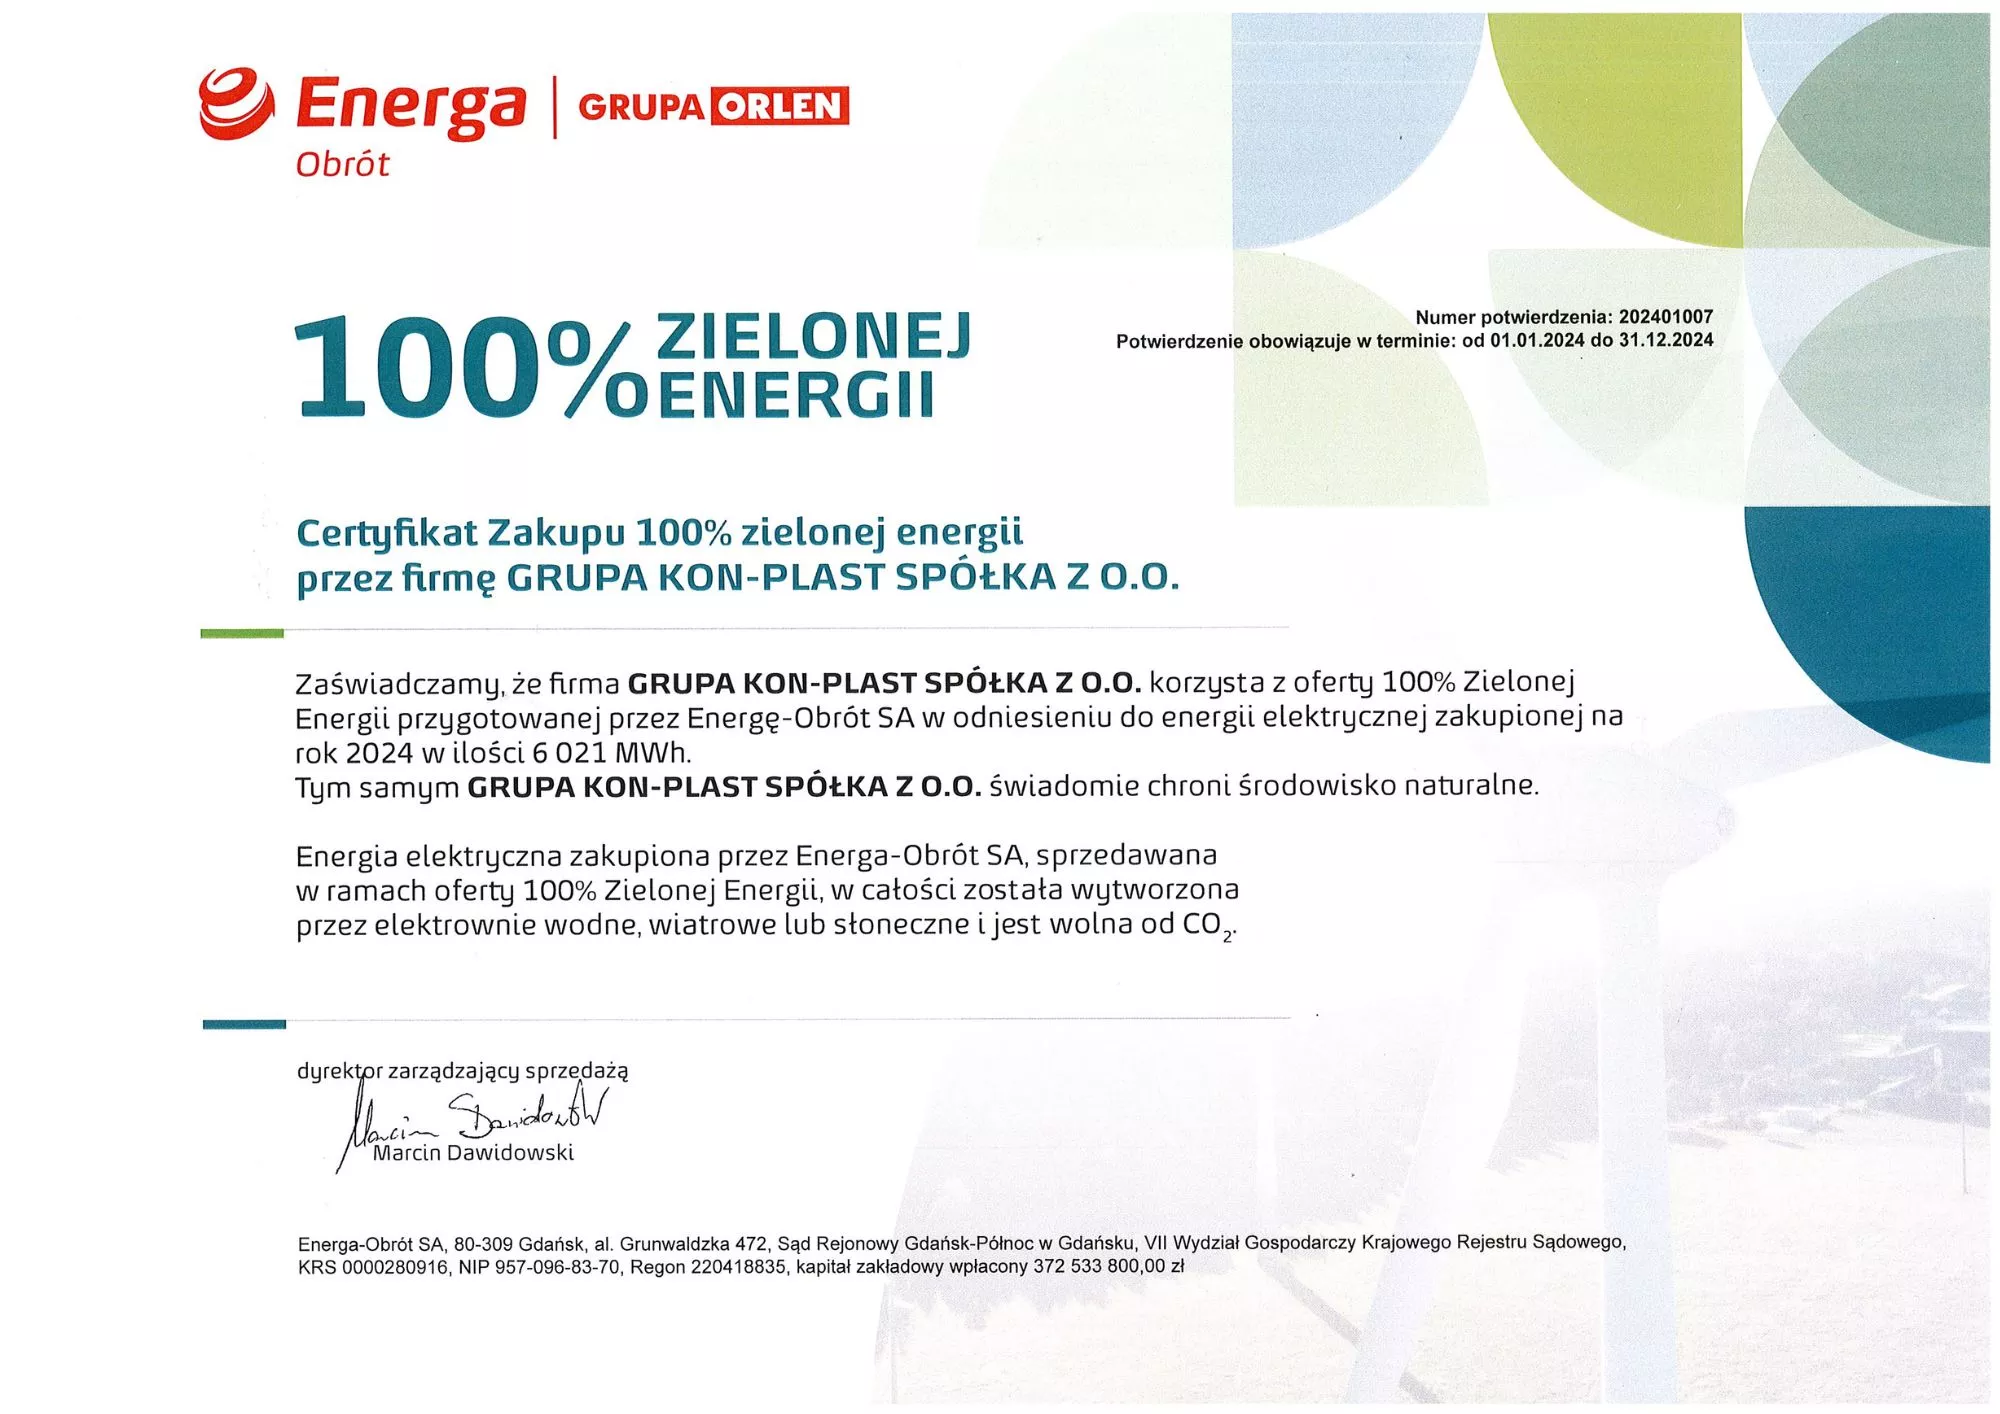 Certyfikat energetyczny